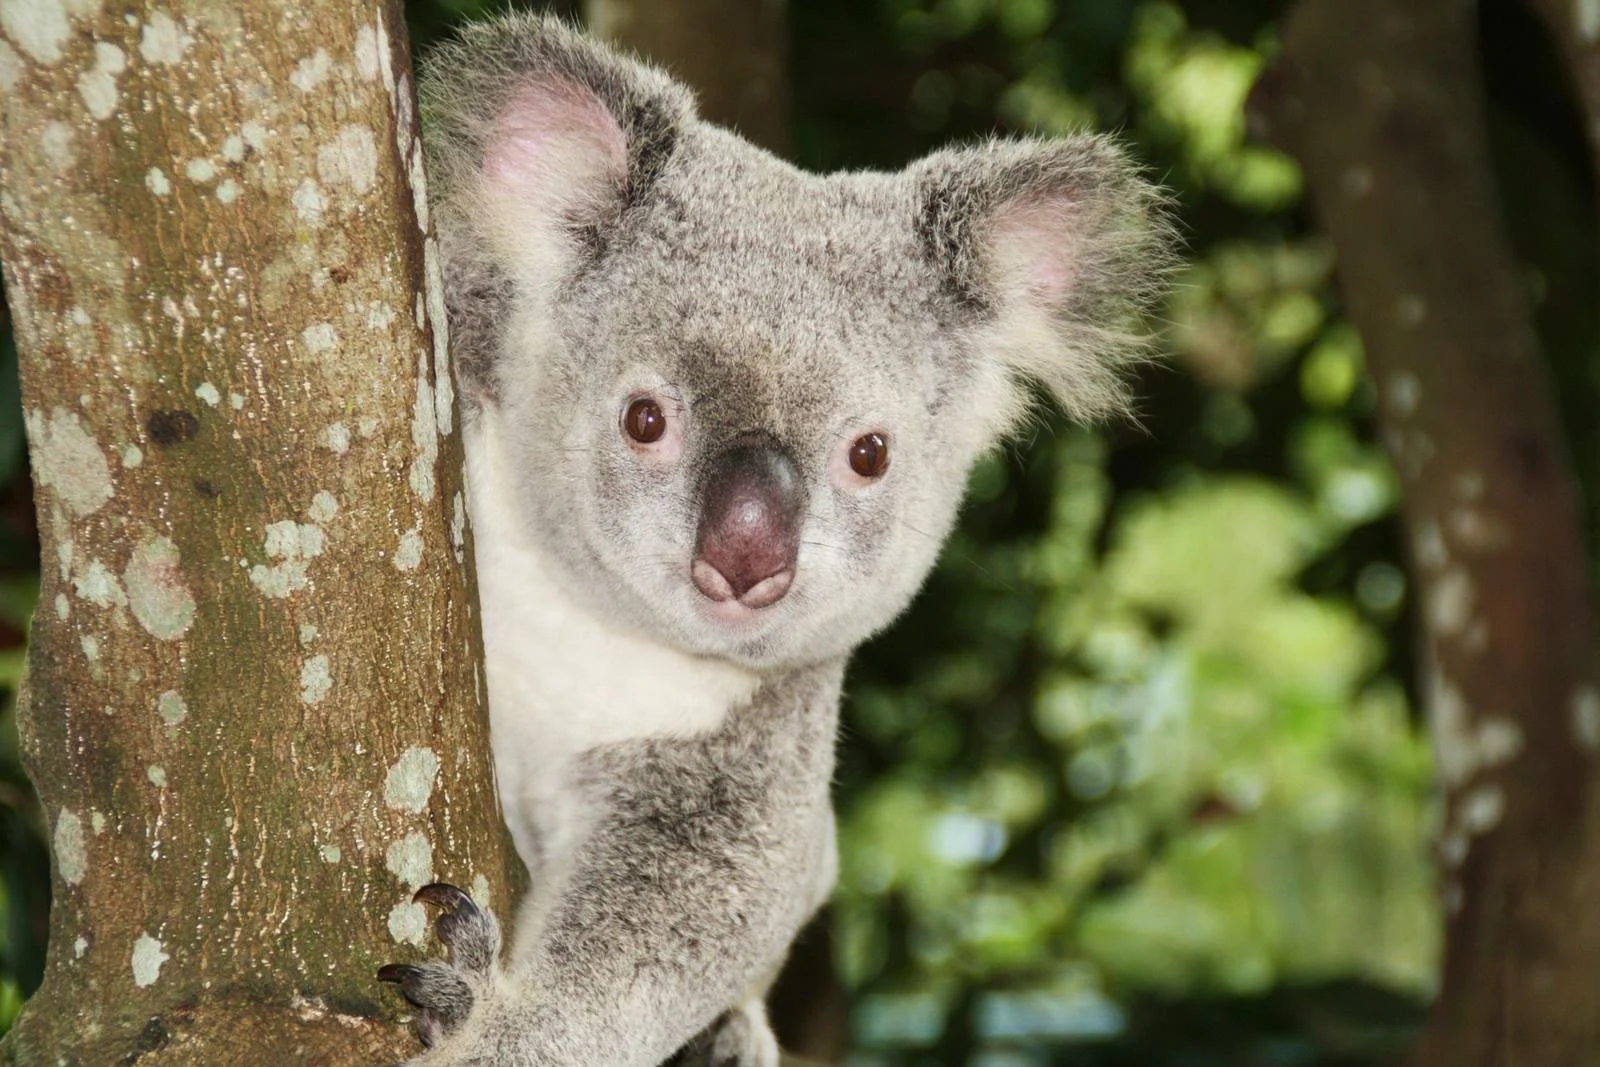 澳洲-昆士蘭-布里斯本-黃金海岸-動物園-龍柏動物園-Lone-Pine-Koala-Sanctuary-可倫賓-庫倫賓野生動物保護區-Currumbin-Wildlife-Sanctuary-澳洲動物園-推薦-必玩-必去-自由行-景點-旅遊-Australia-Zoo